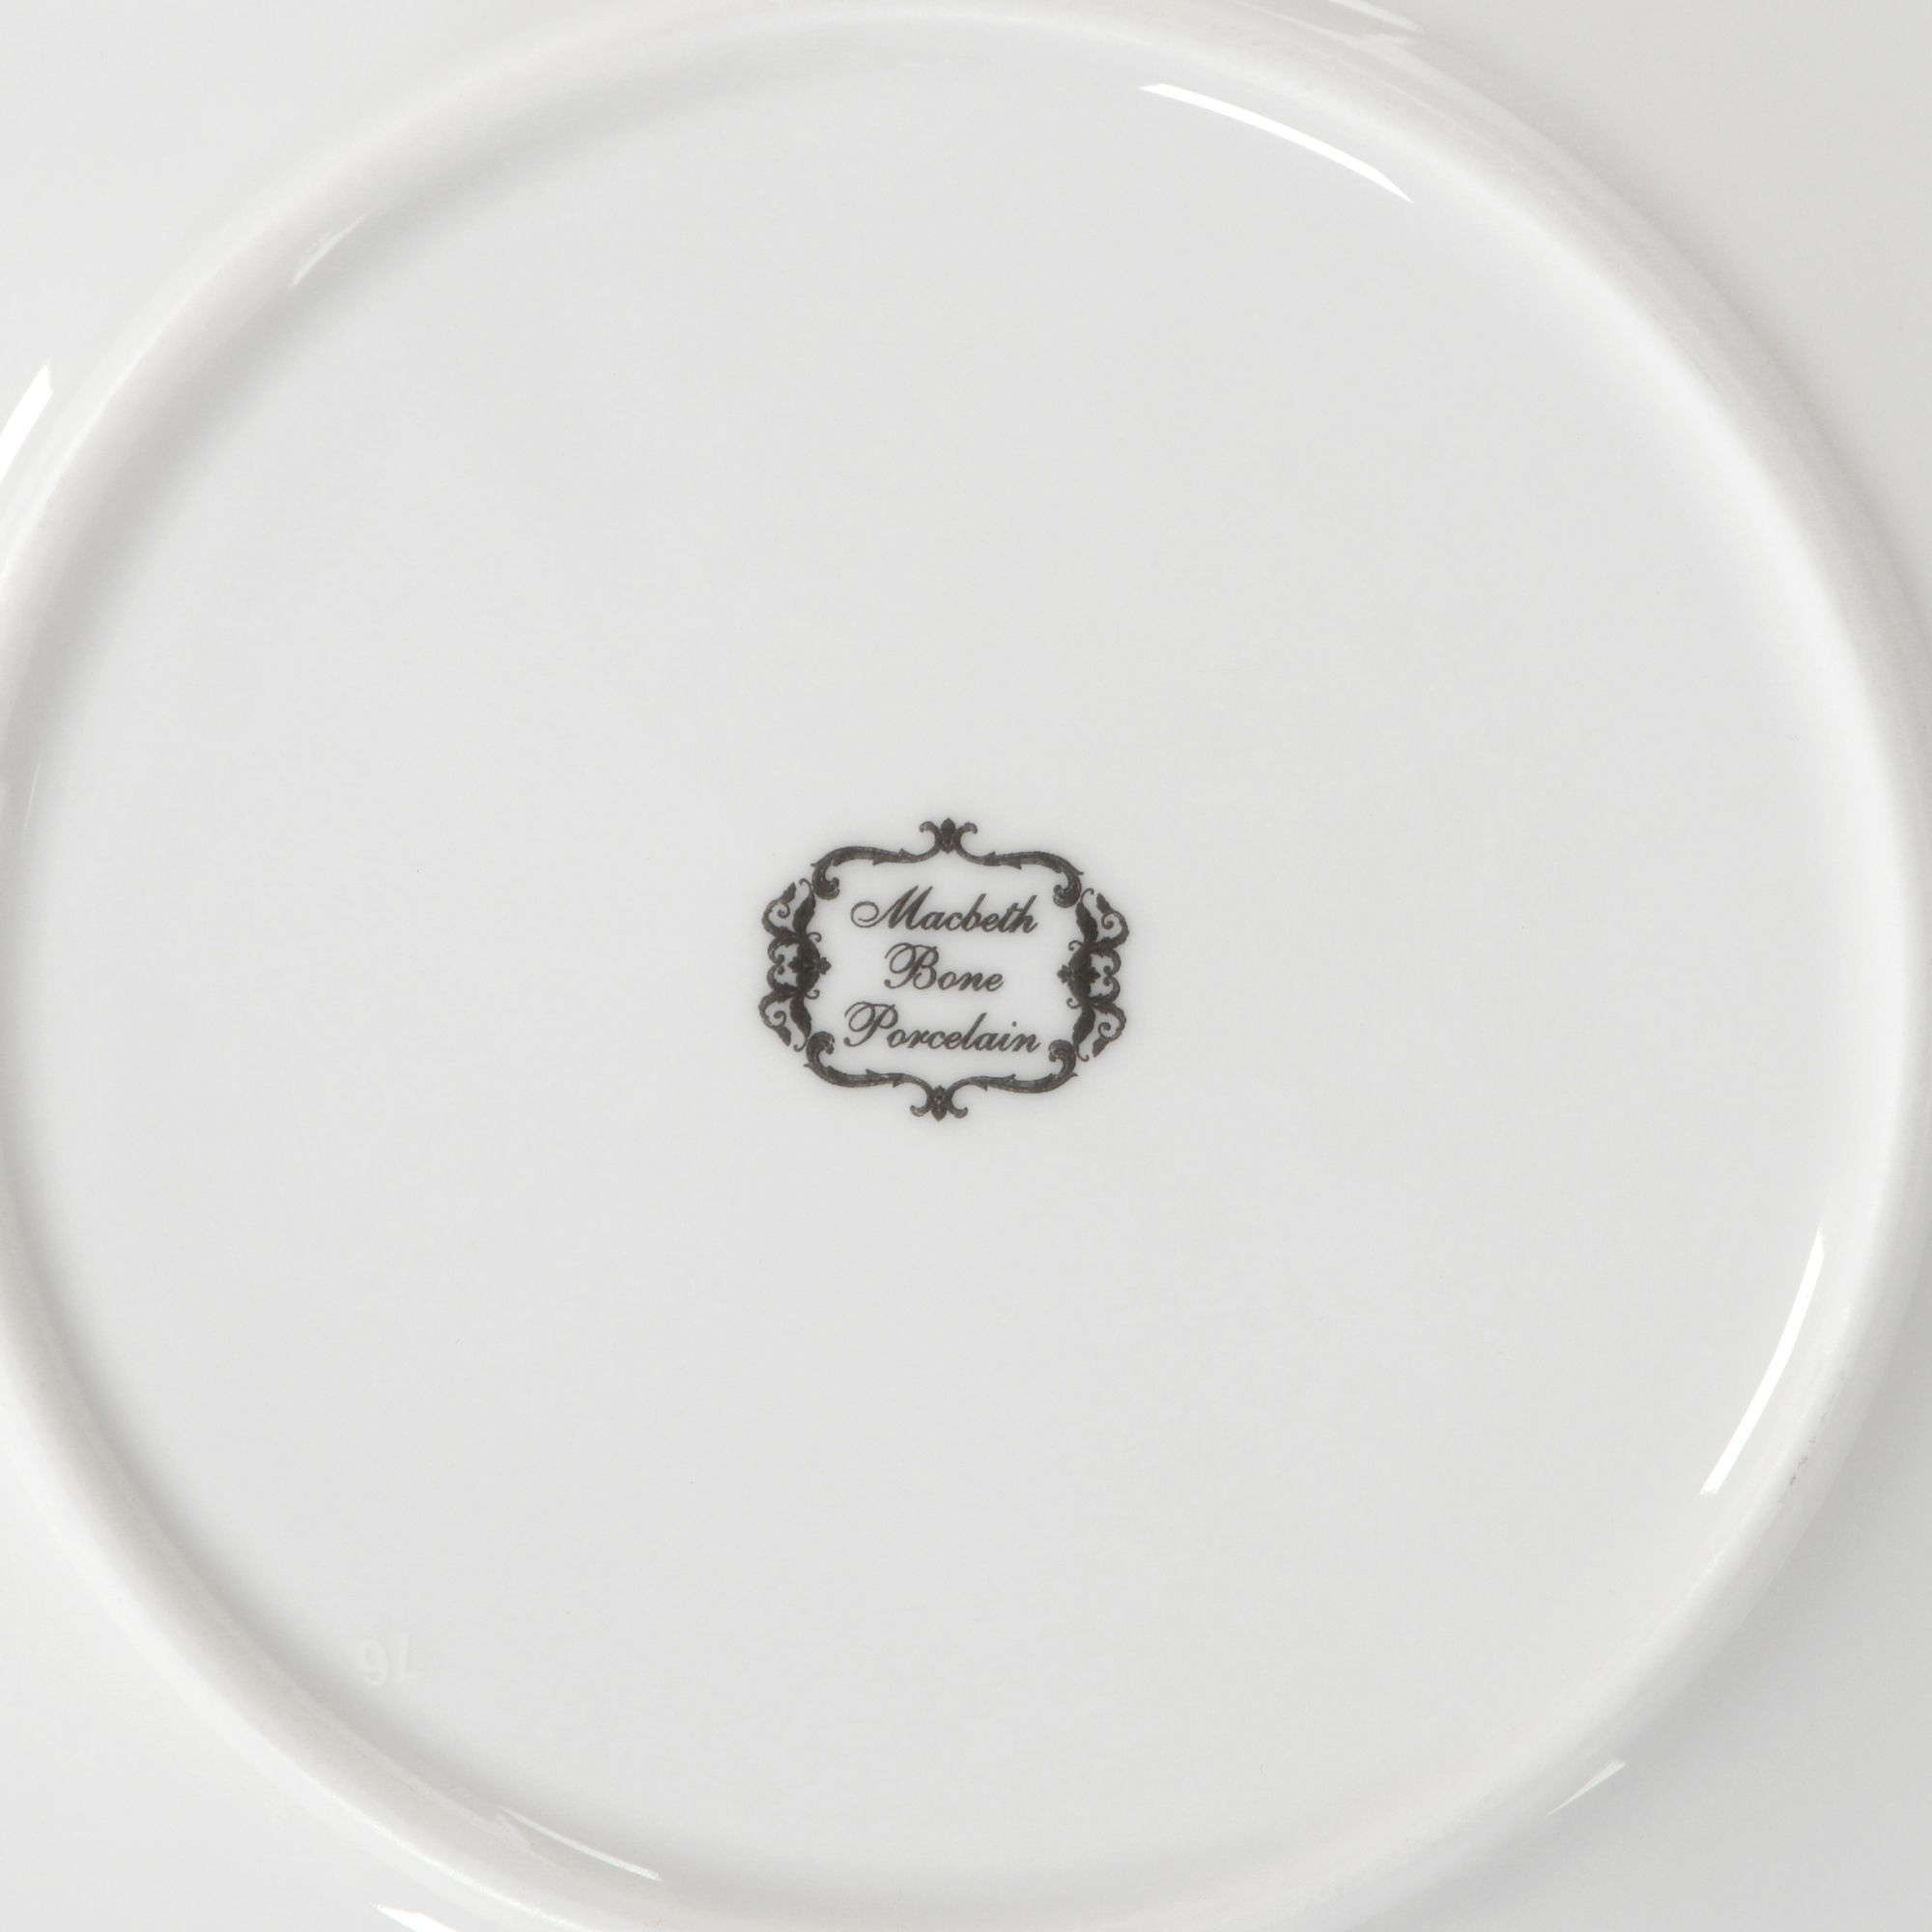 Сервиз столовый Macbeth bone porcelain Finest 29 предметов 6 персон, цвет белый - фото 18